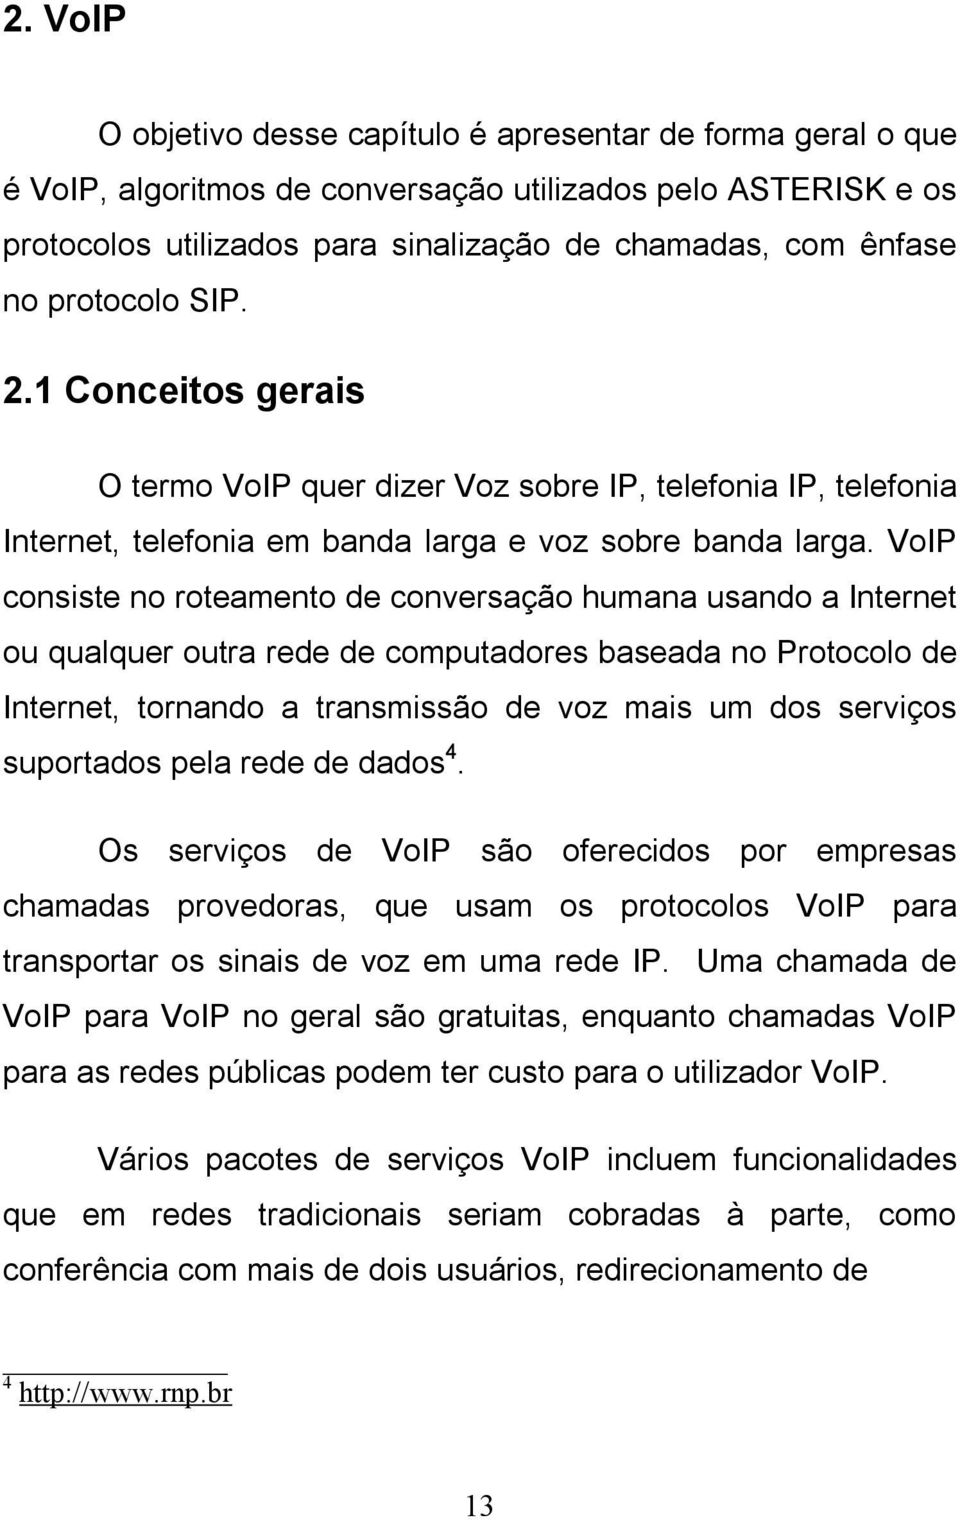 VoIP consiste no roteamento de conversação humana usando a Internet ou qualquer outra rede de computadores baseada no Protocolo de Internet, tornando a transmissão de voz mais um dos serviços